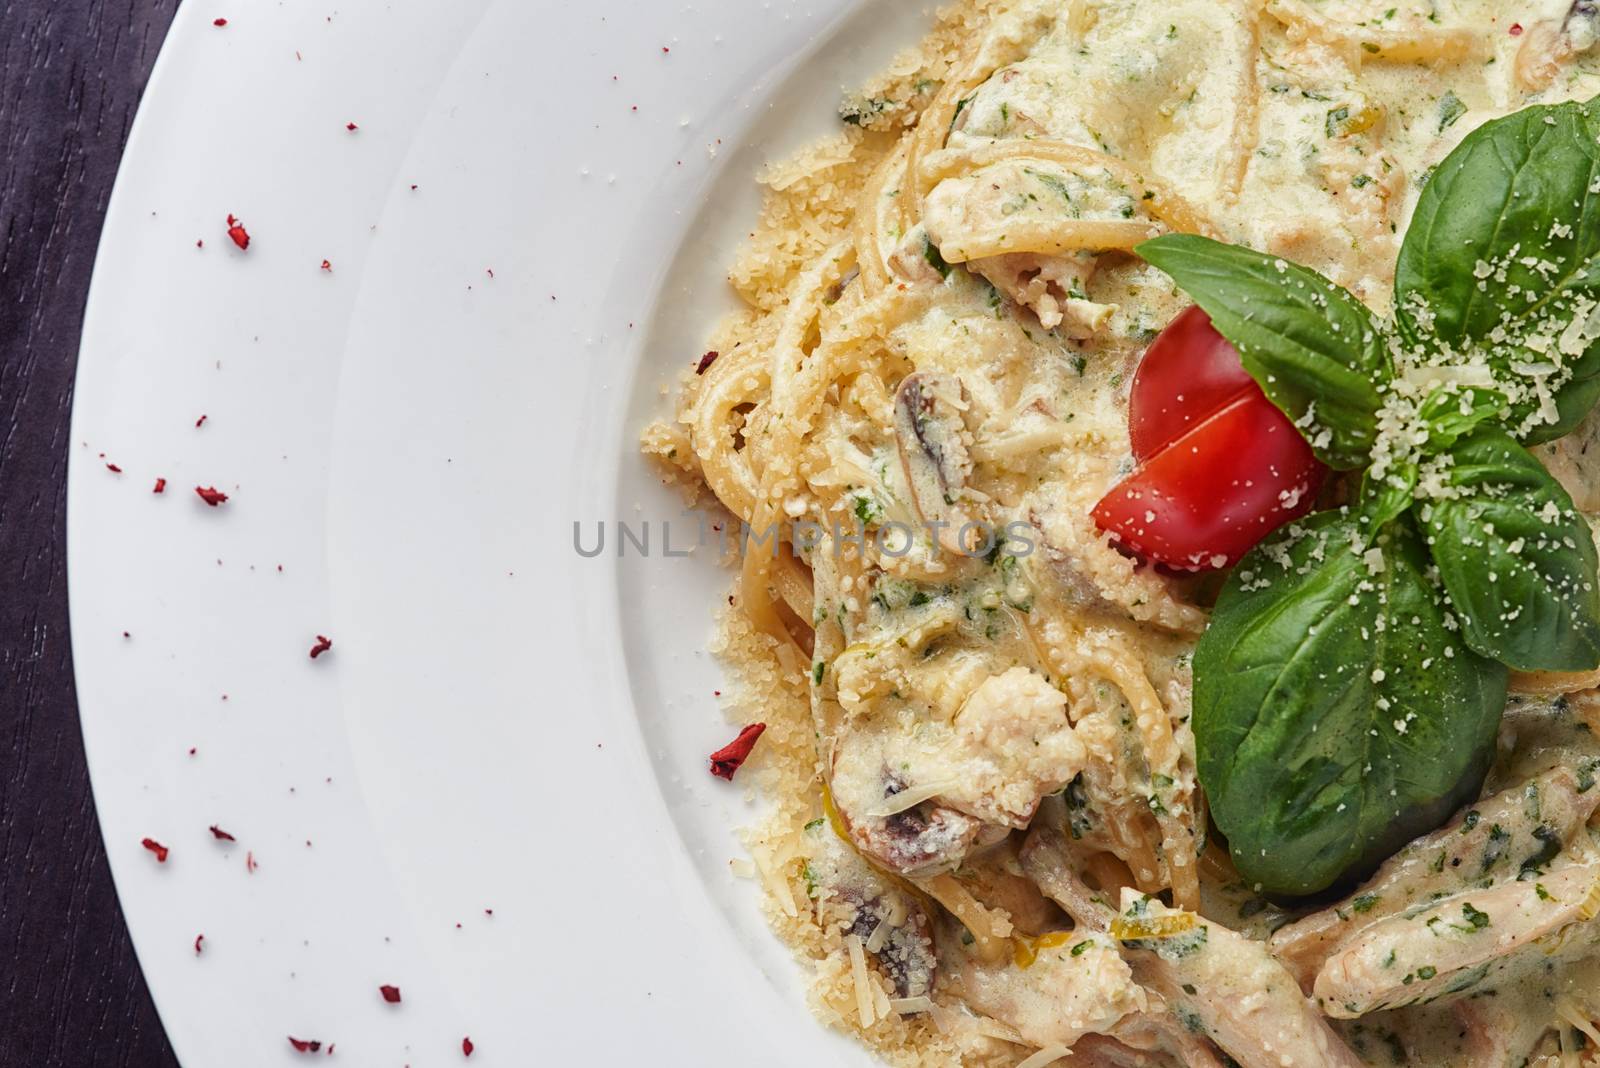 Italian spaghetti with sauce, mushrooms and basil leaf by shivanetua